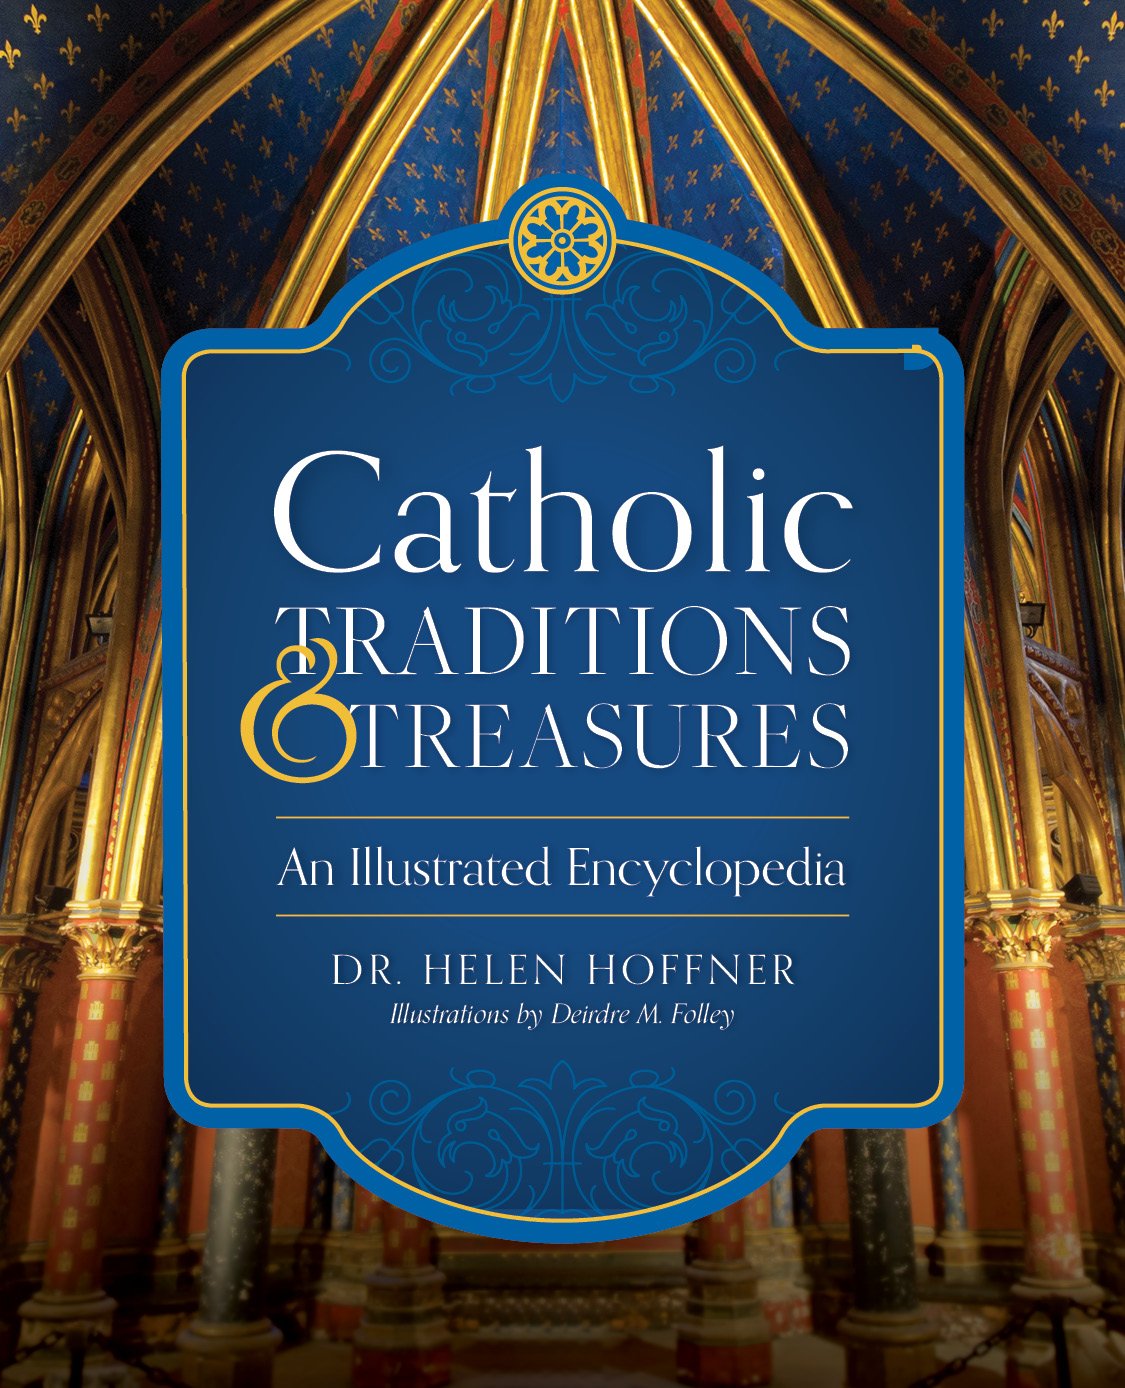 Tradiciones y tesoros católicos: una enciclopedia ilustrada